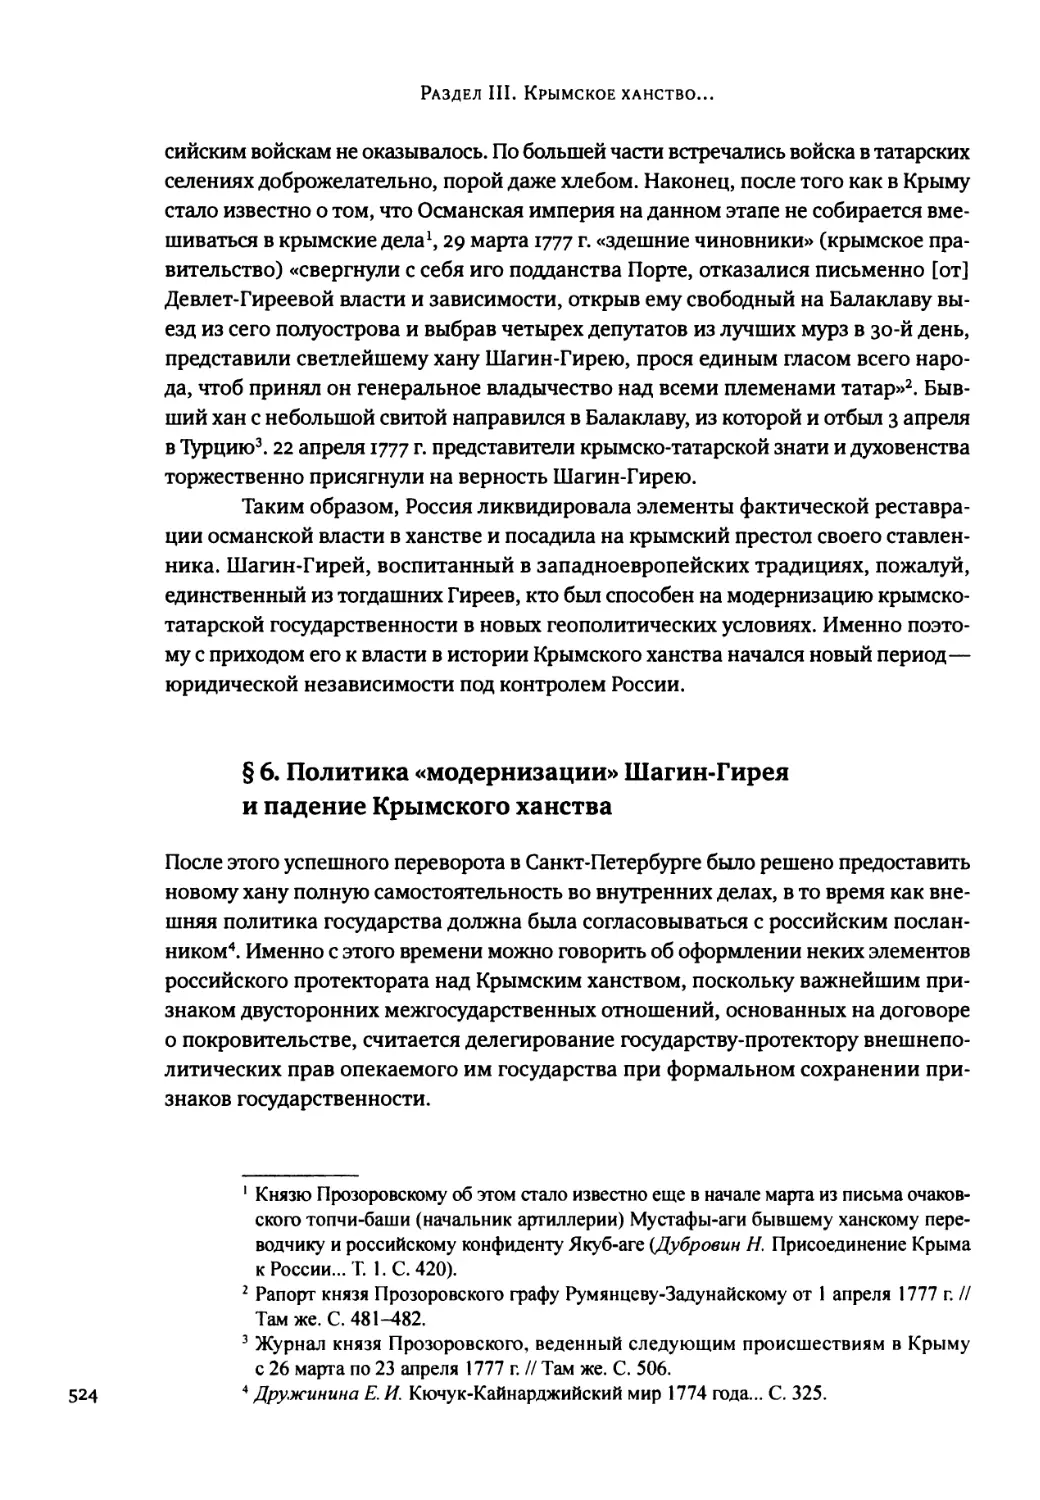 § 6. Политика «модернизации» Шагин-Гирея и падение Крымского ханства